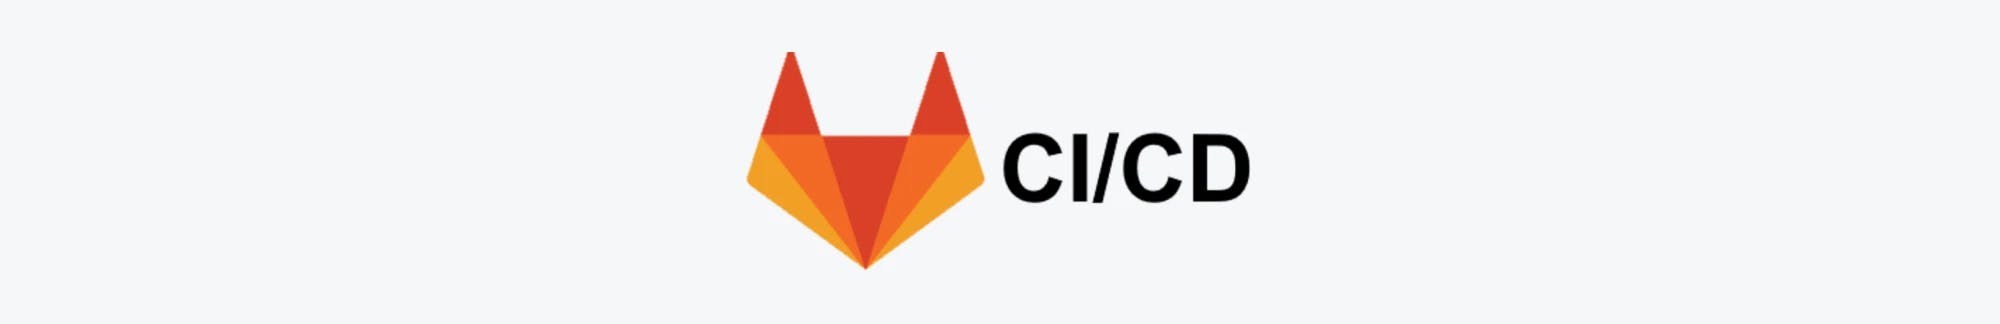 GetLab CI/CD logo